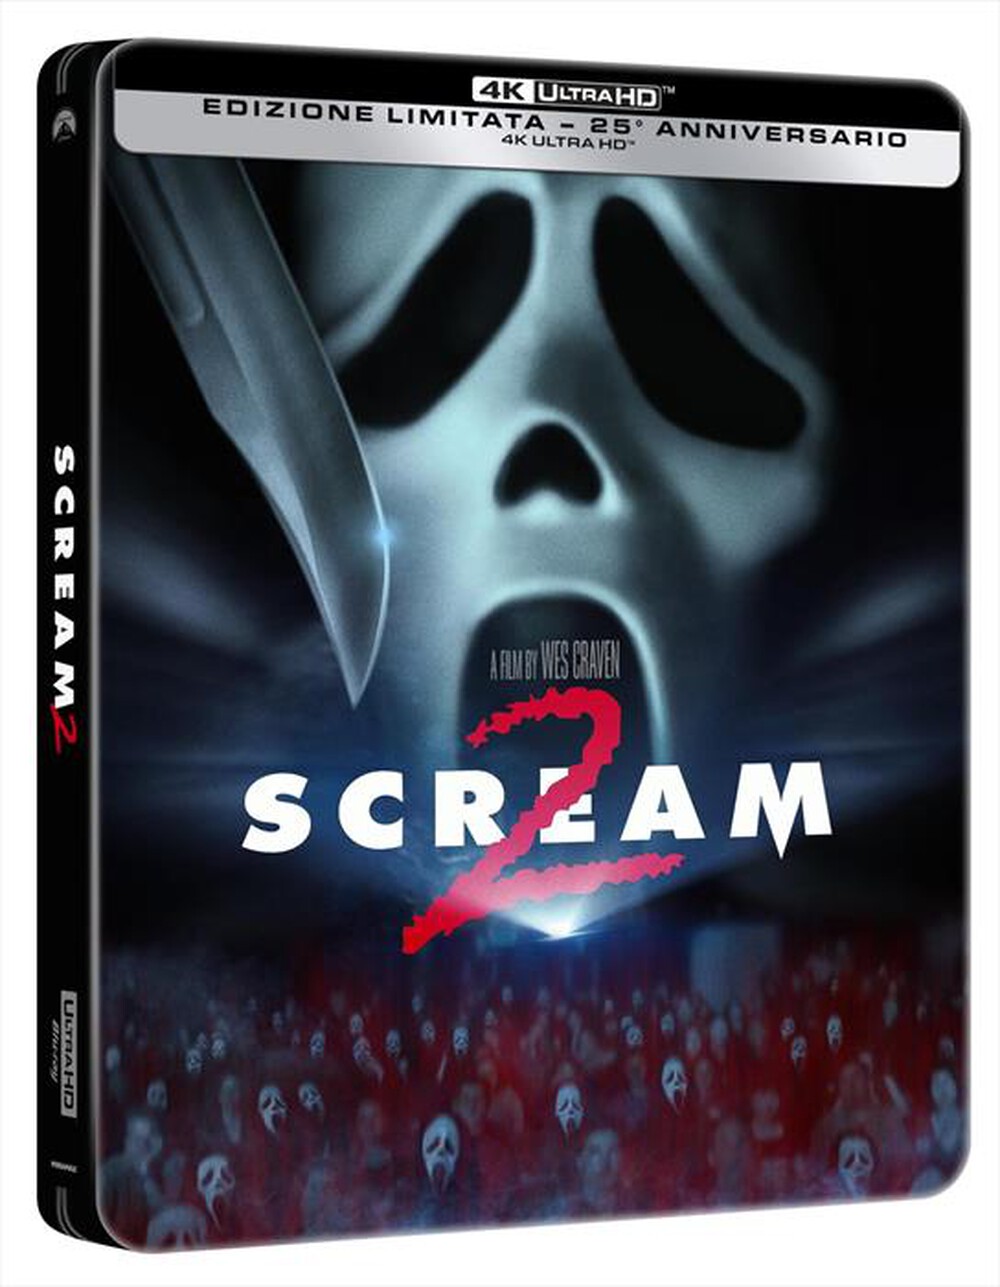 "PARAMOUNT PICTURE - Scream 2 (Edizione Steelbook 25 Anniversario)"